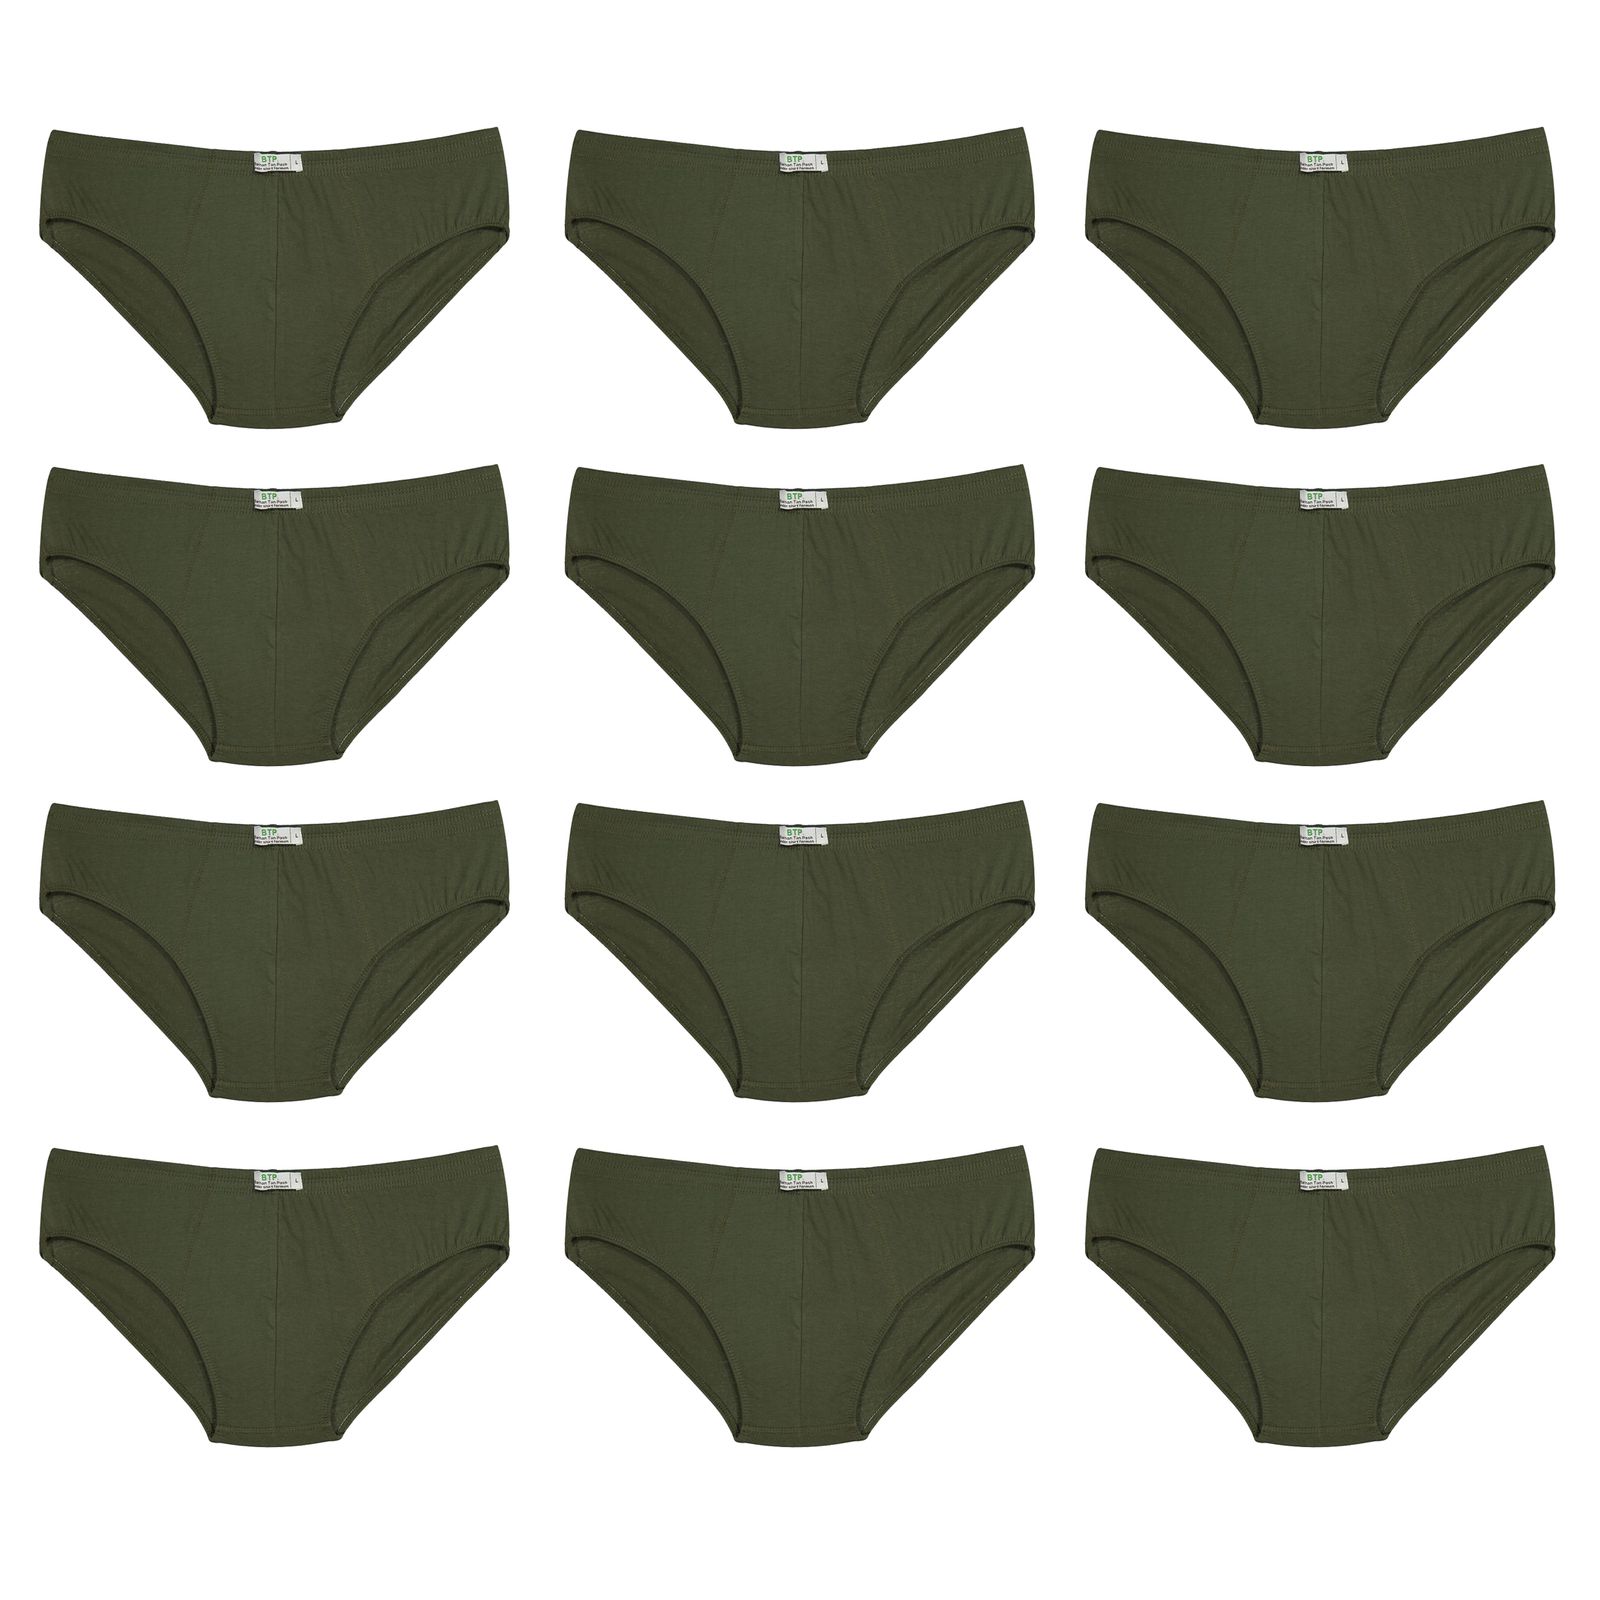 شورت مردانه برهان تن پوش مدل اسلیپ 6-03 رنگ سبز بسته 12 عددی